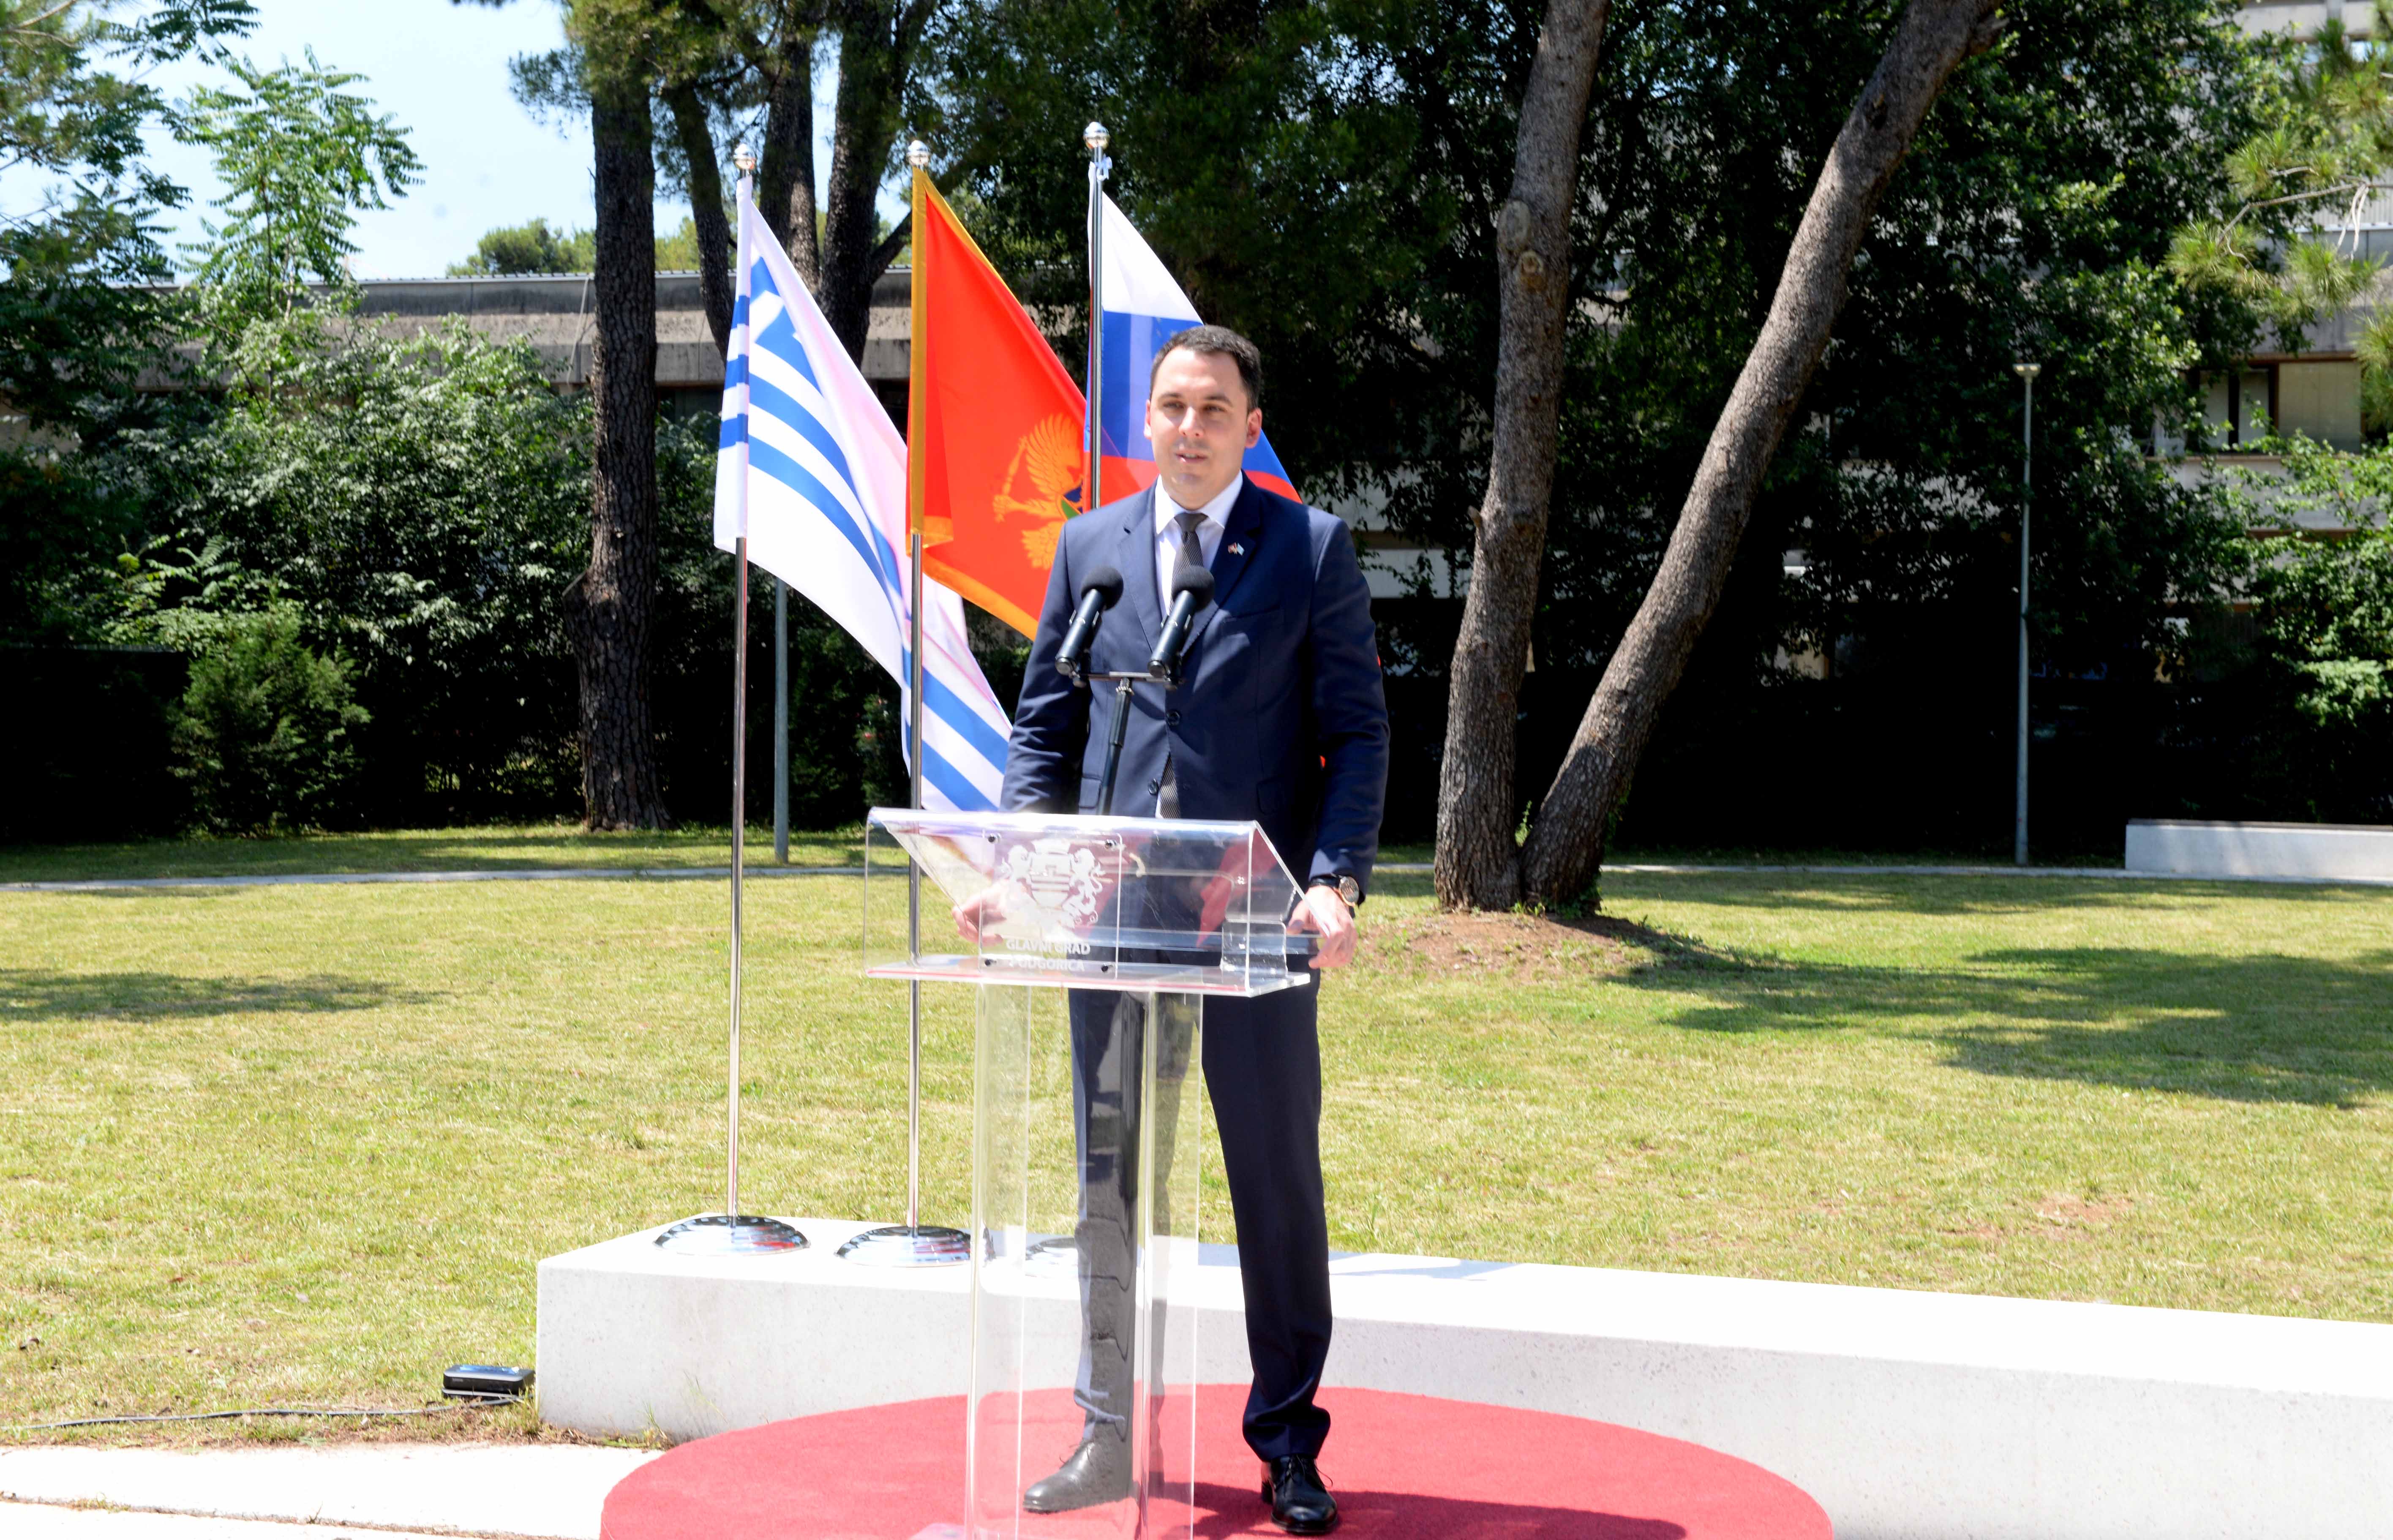 Delegacije Glavnog grada i Republike Slovenije položile vijenac na spomenik Francu Prešernu